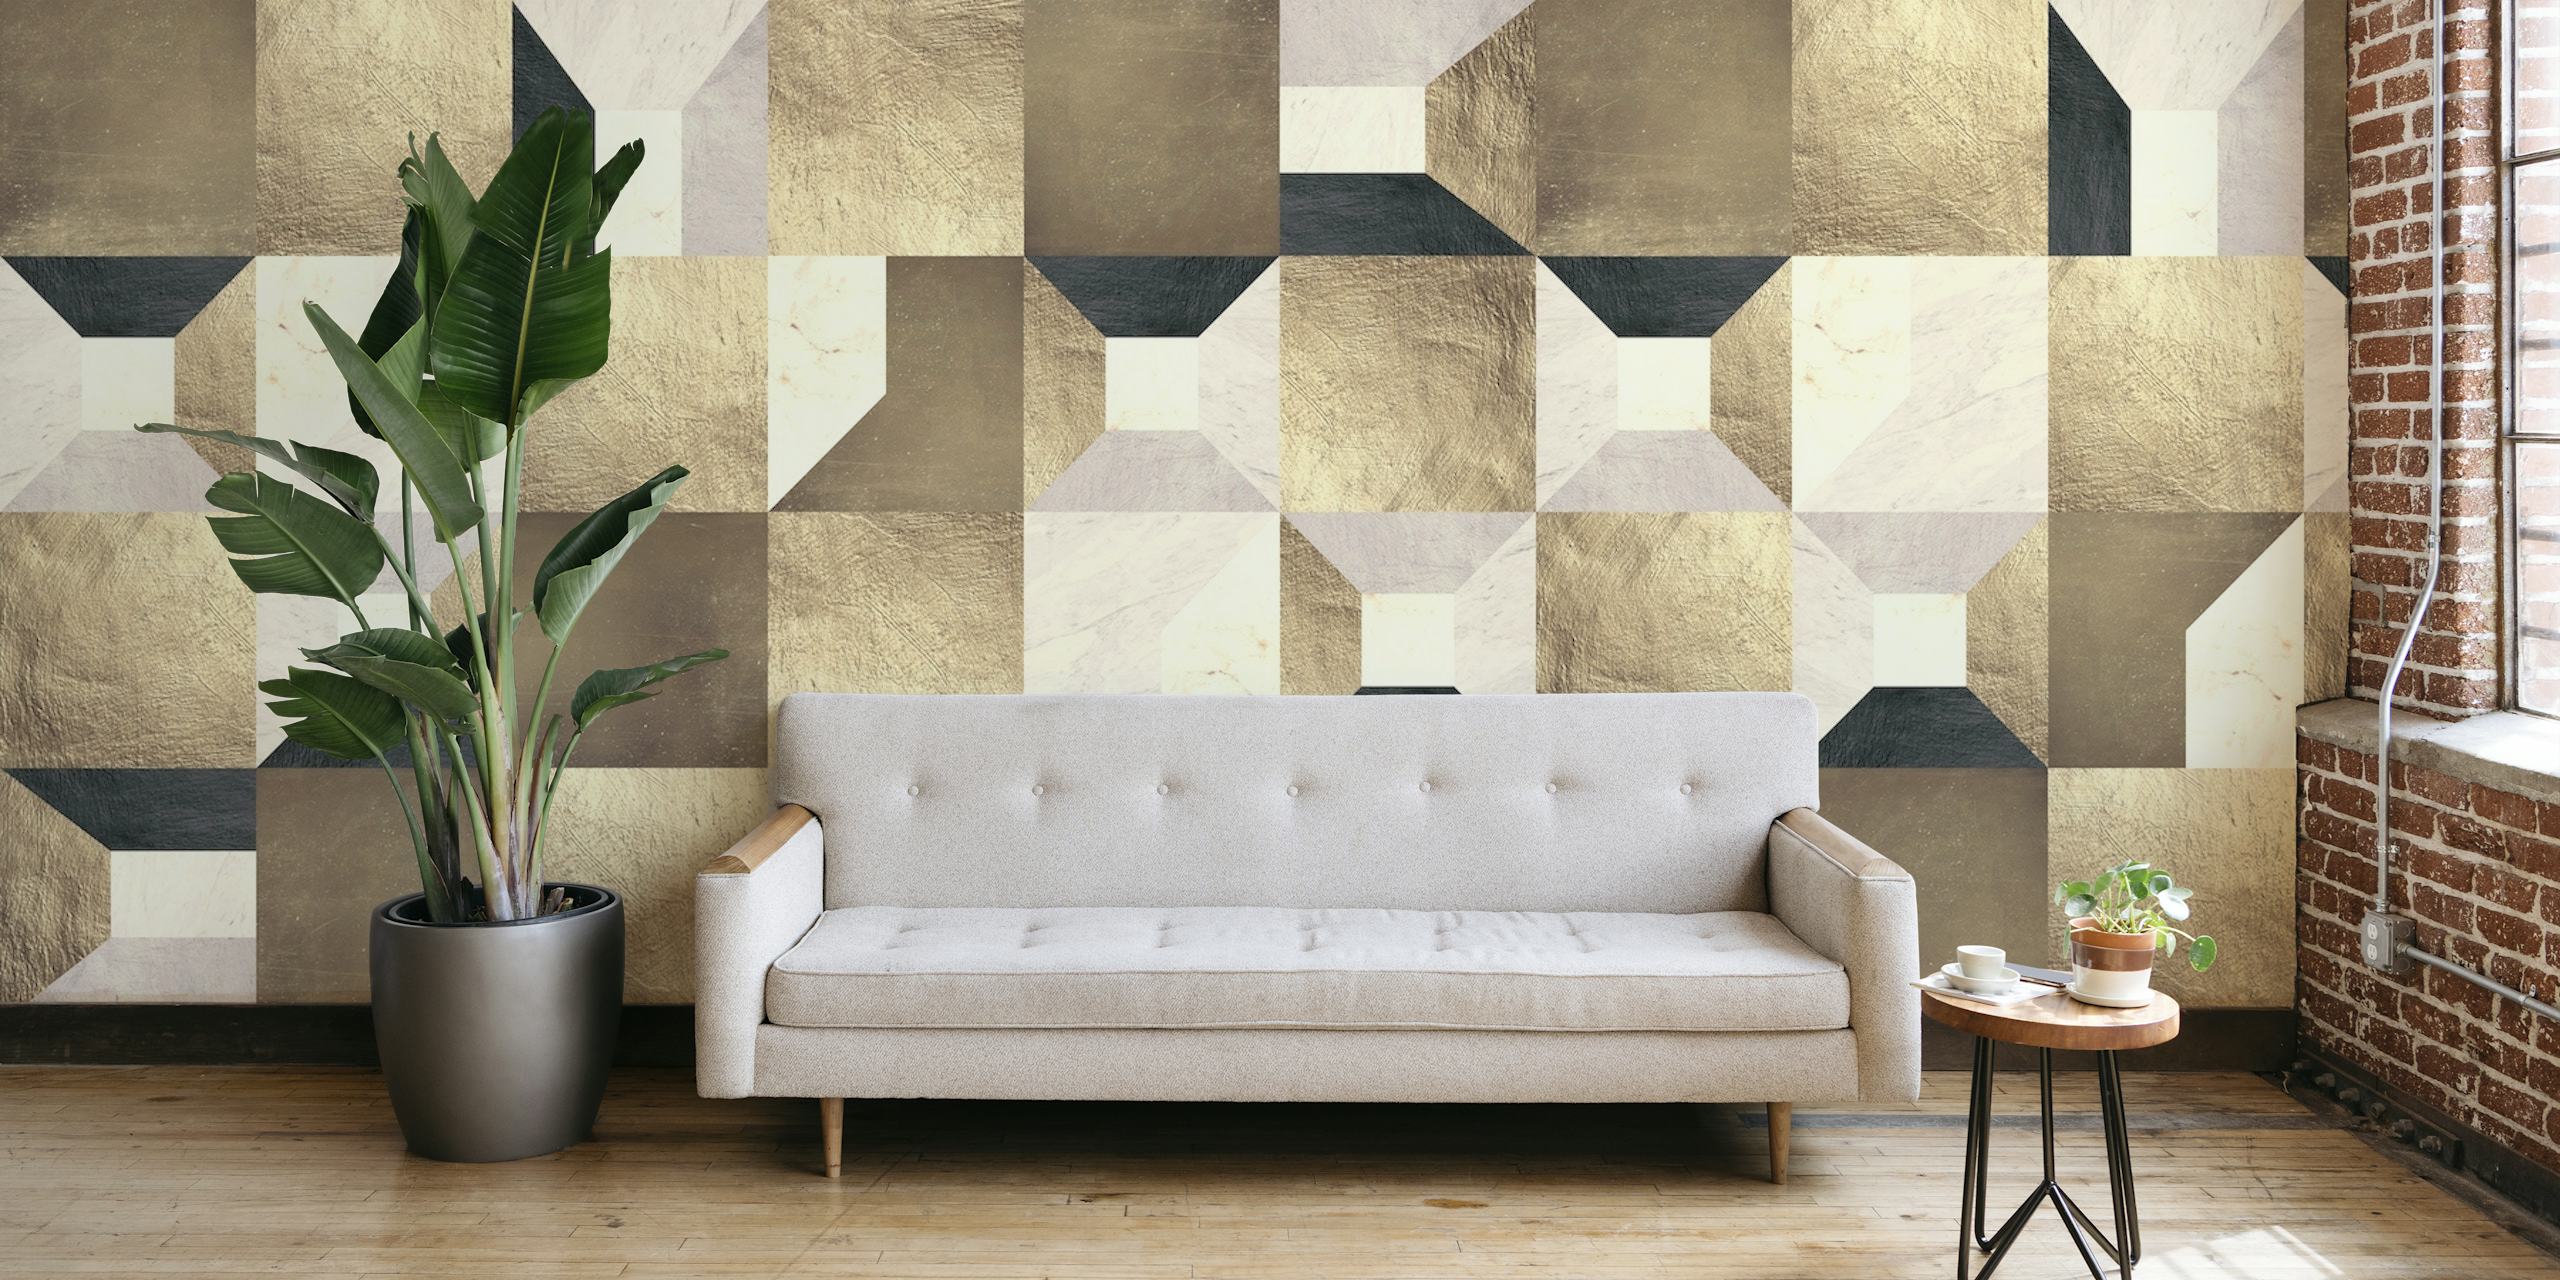 Papier peint géométrique à carrés dorés avec un mélange de nuances beige, crème et dorées formant un motif élégant.